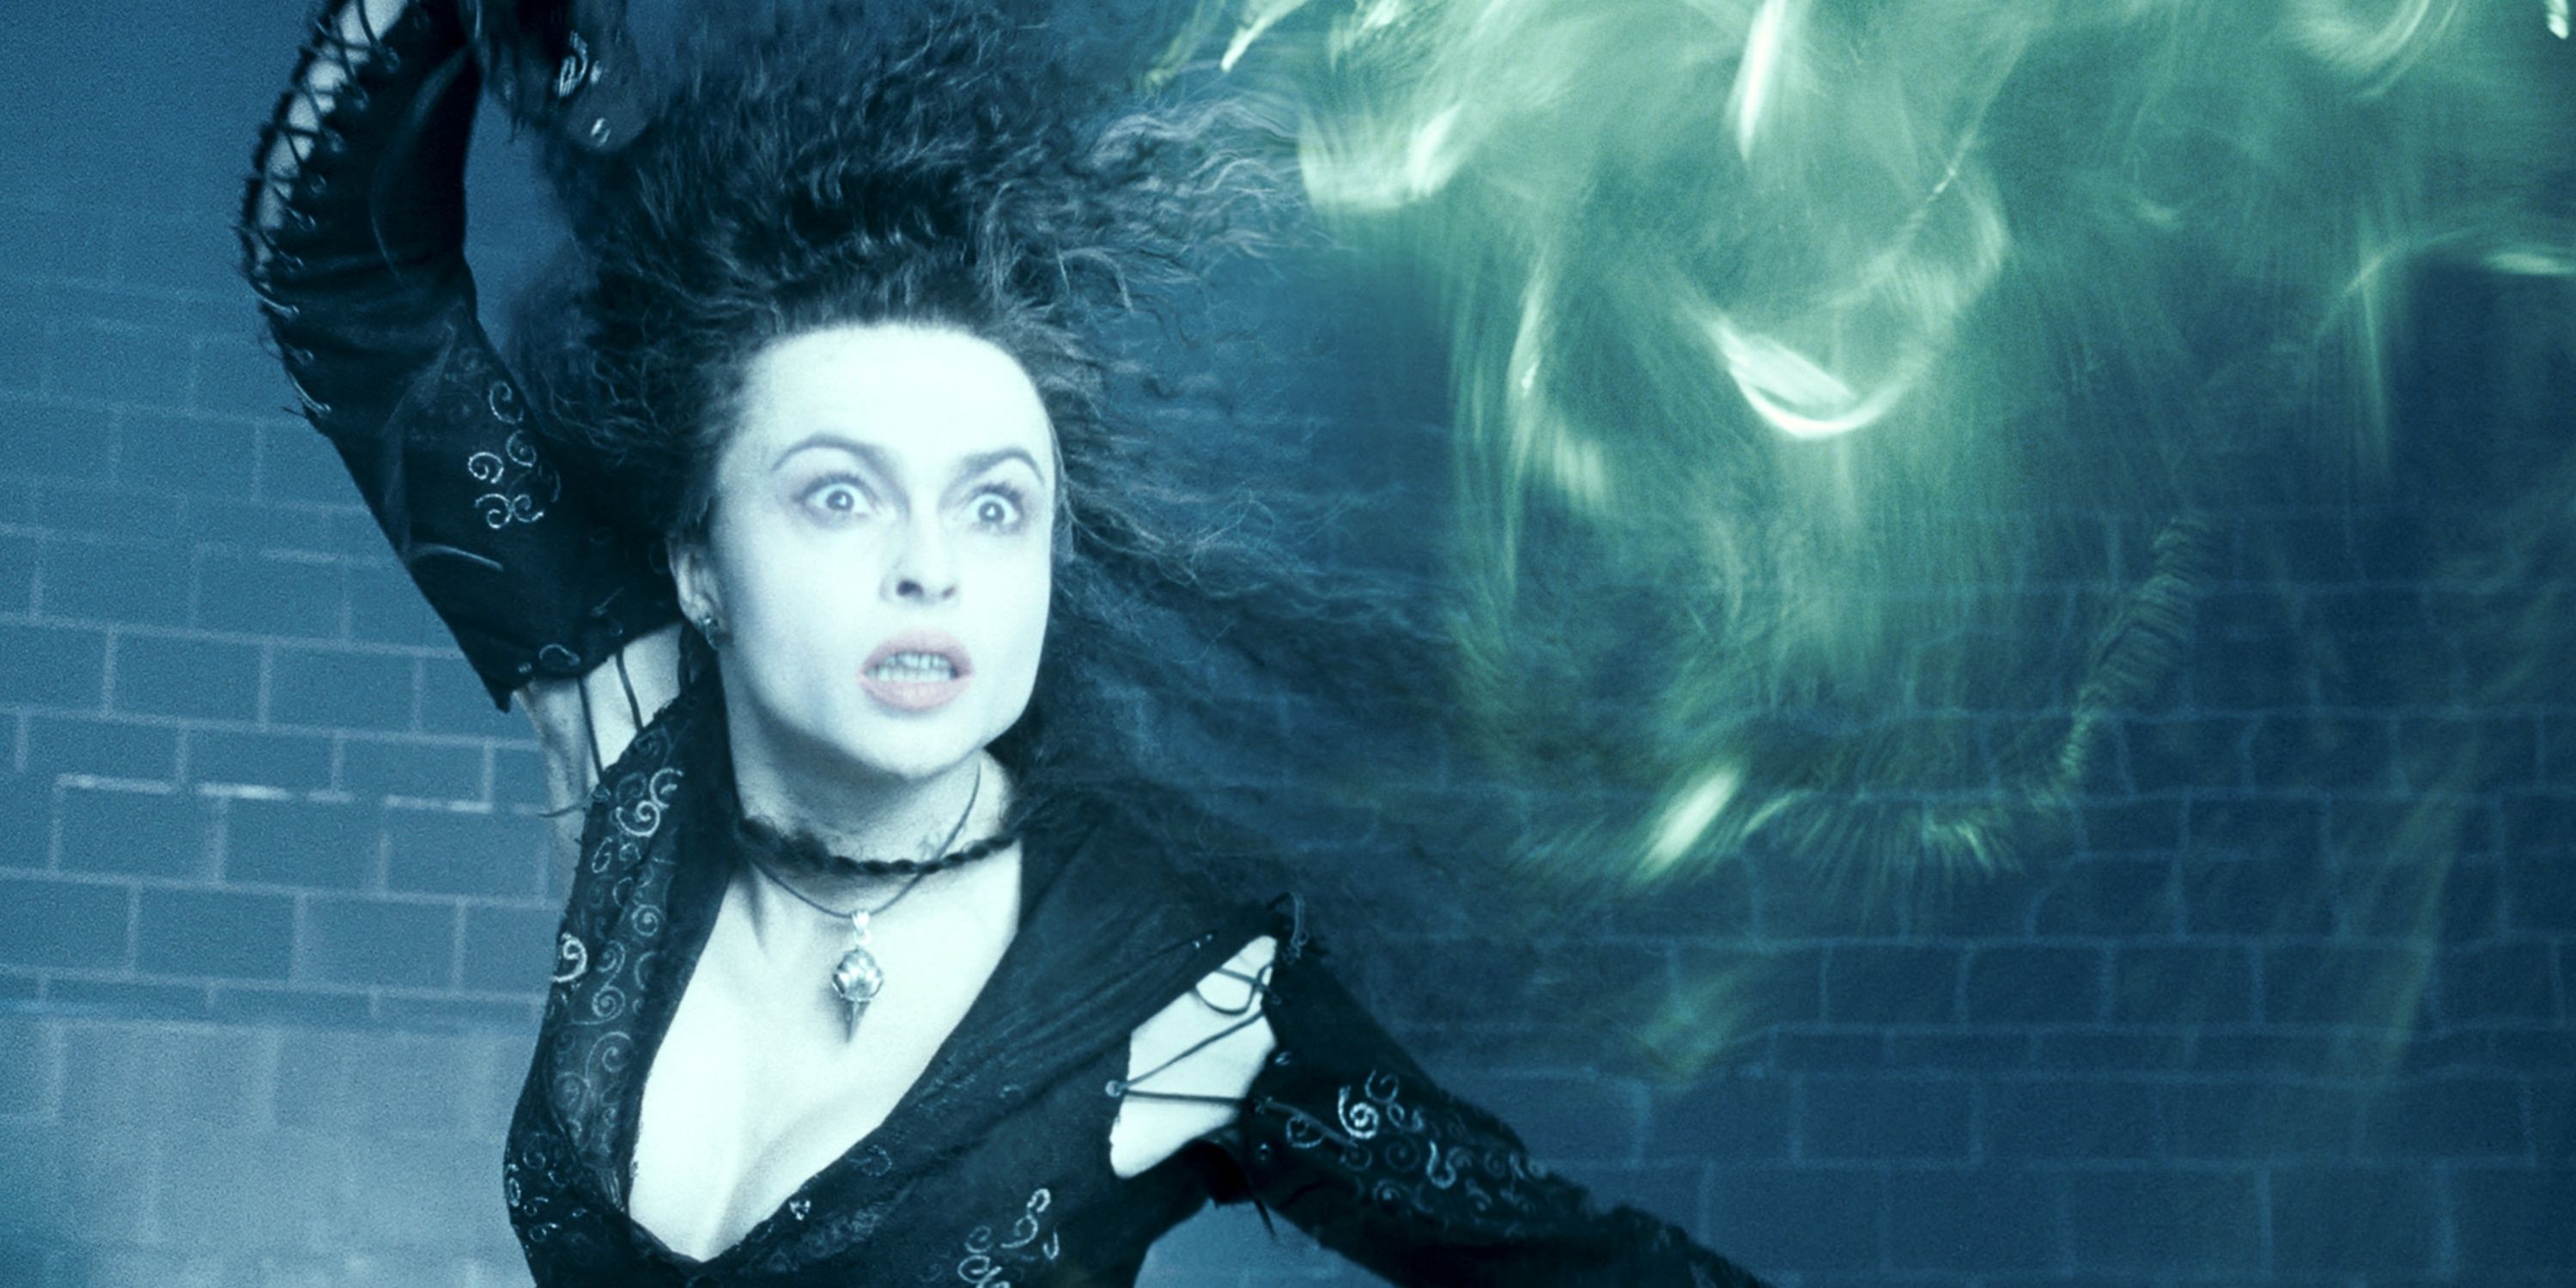 Bellatrix casts the killing curse